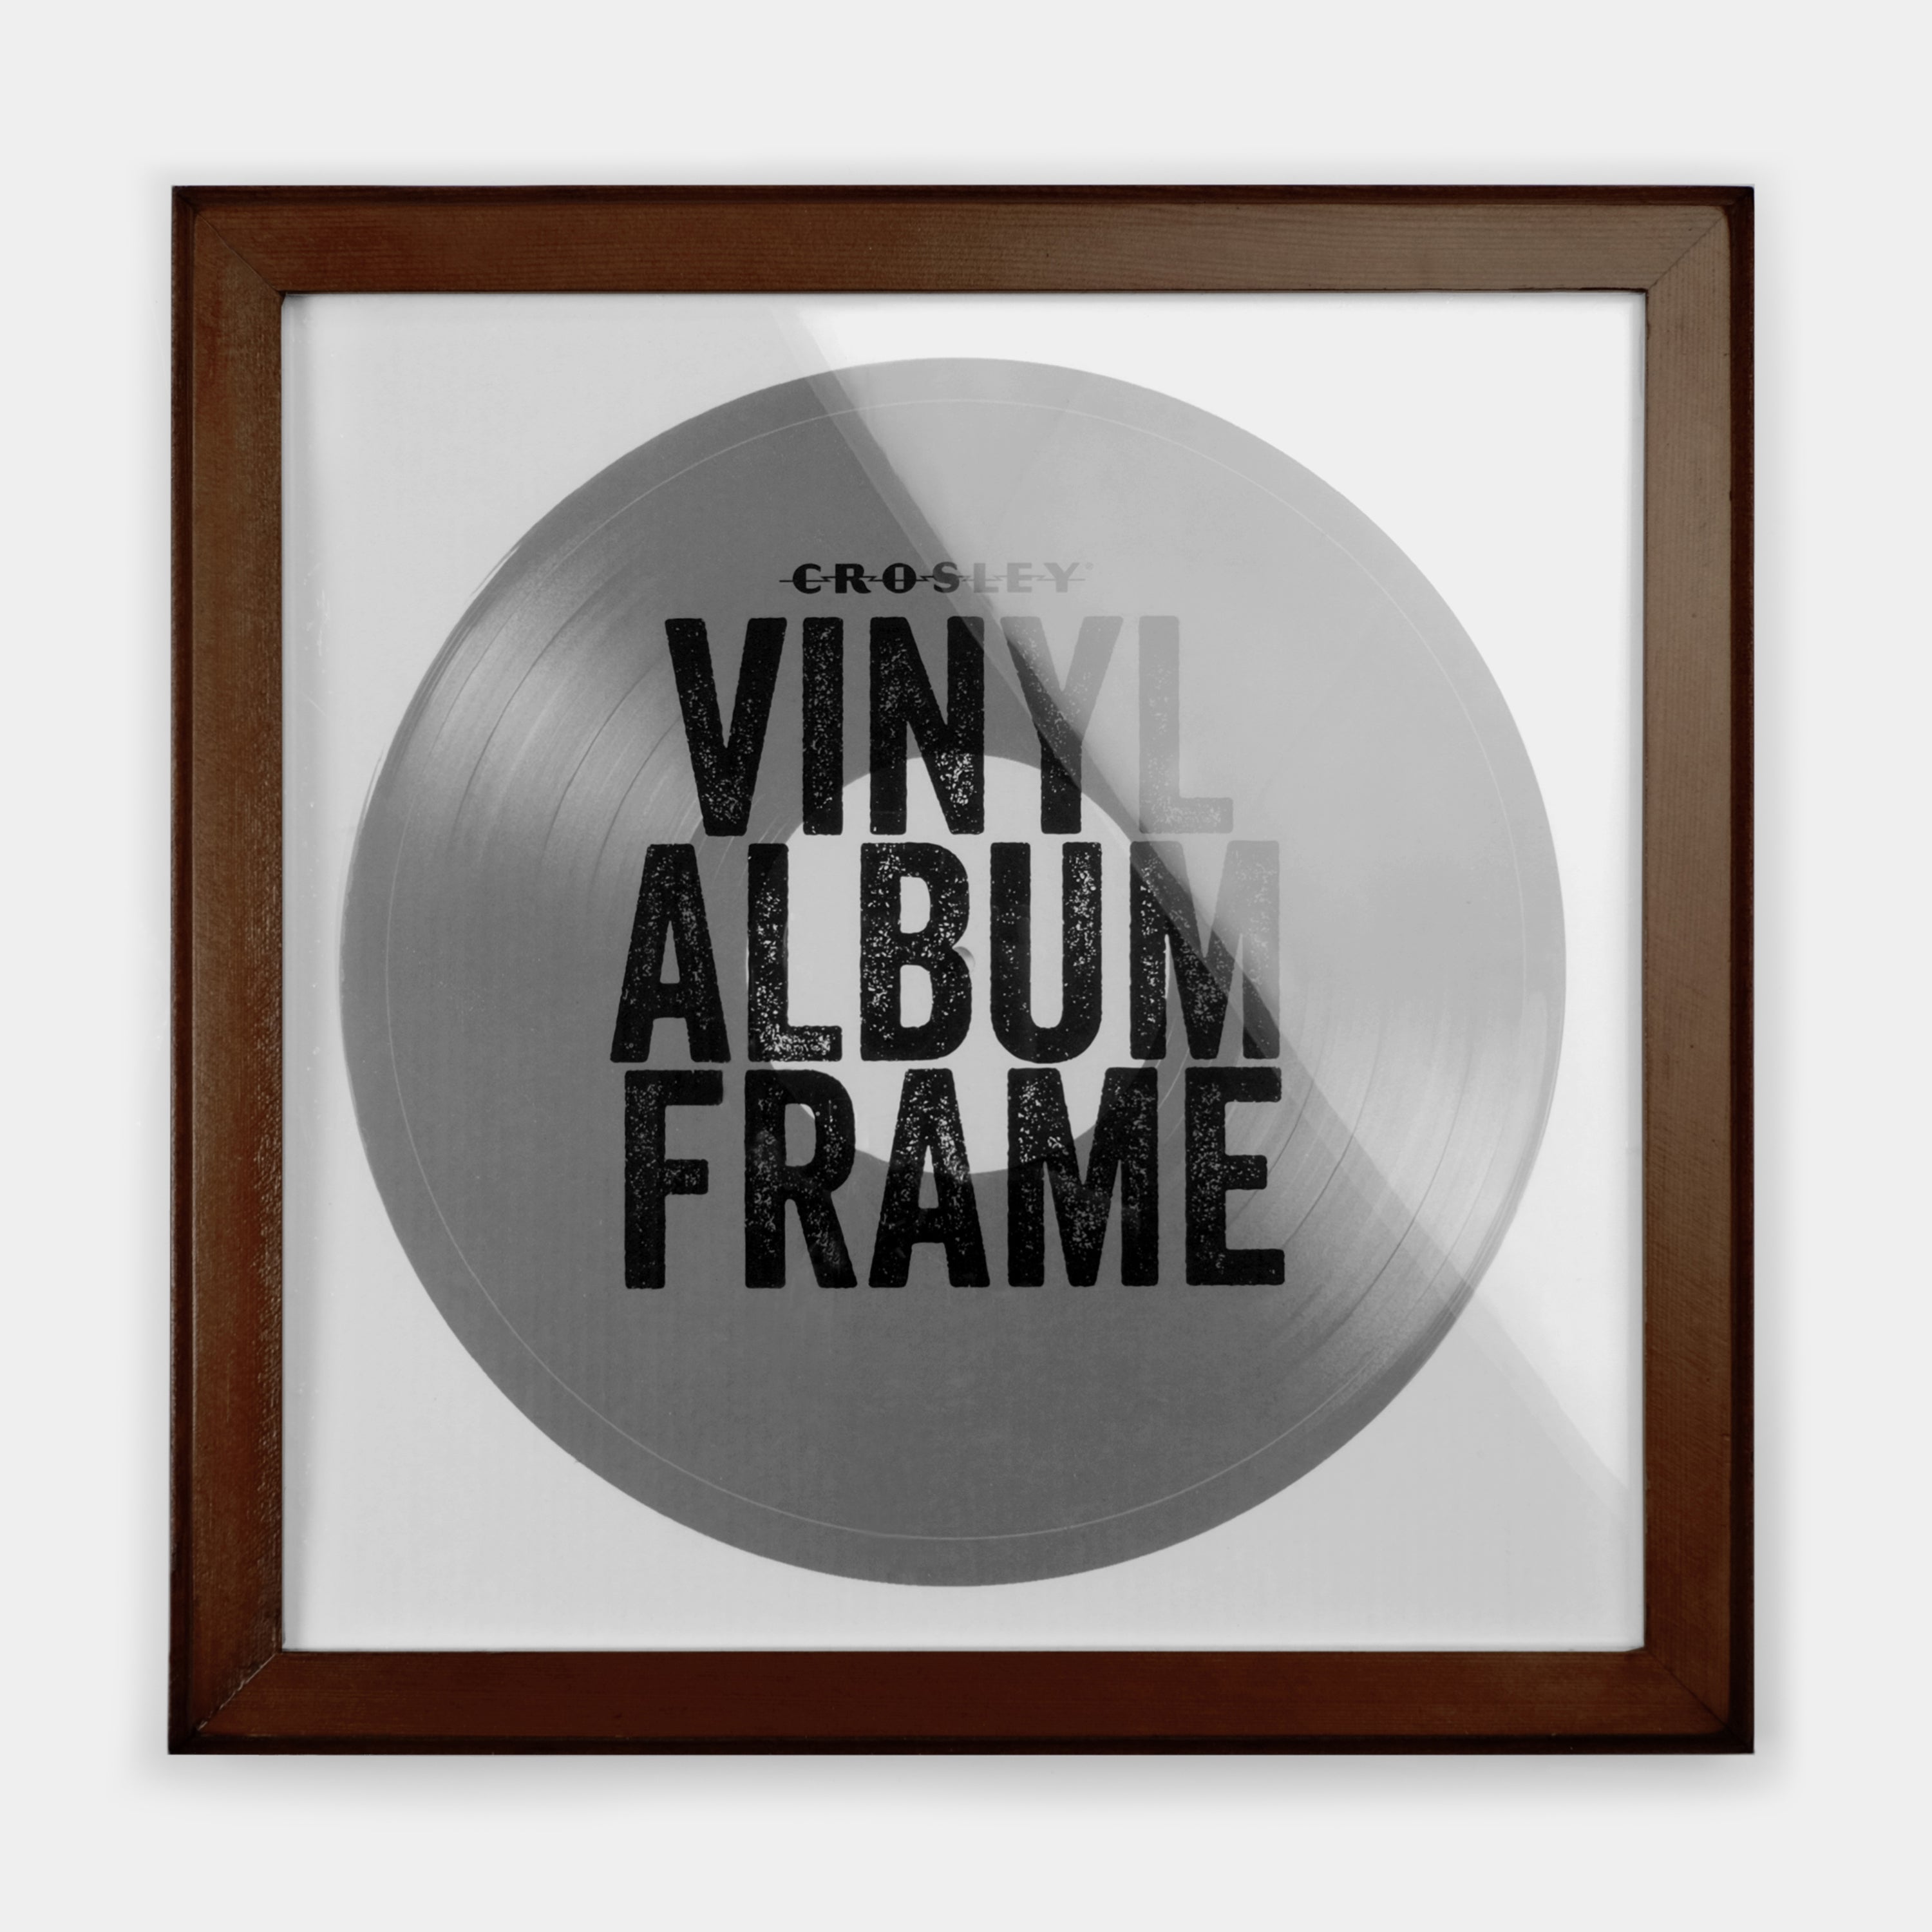 Crosley Wood Vinyl Record Frame - Mahogany